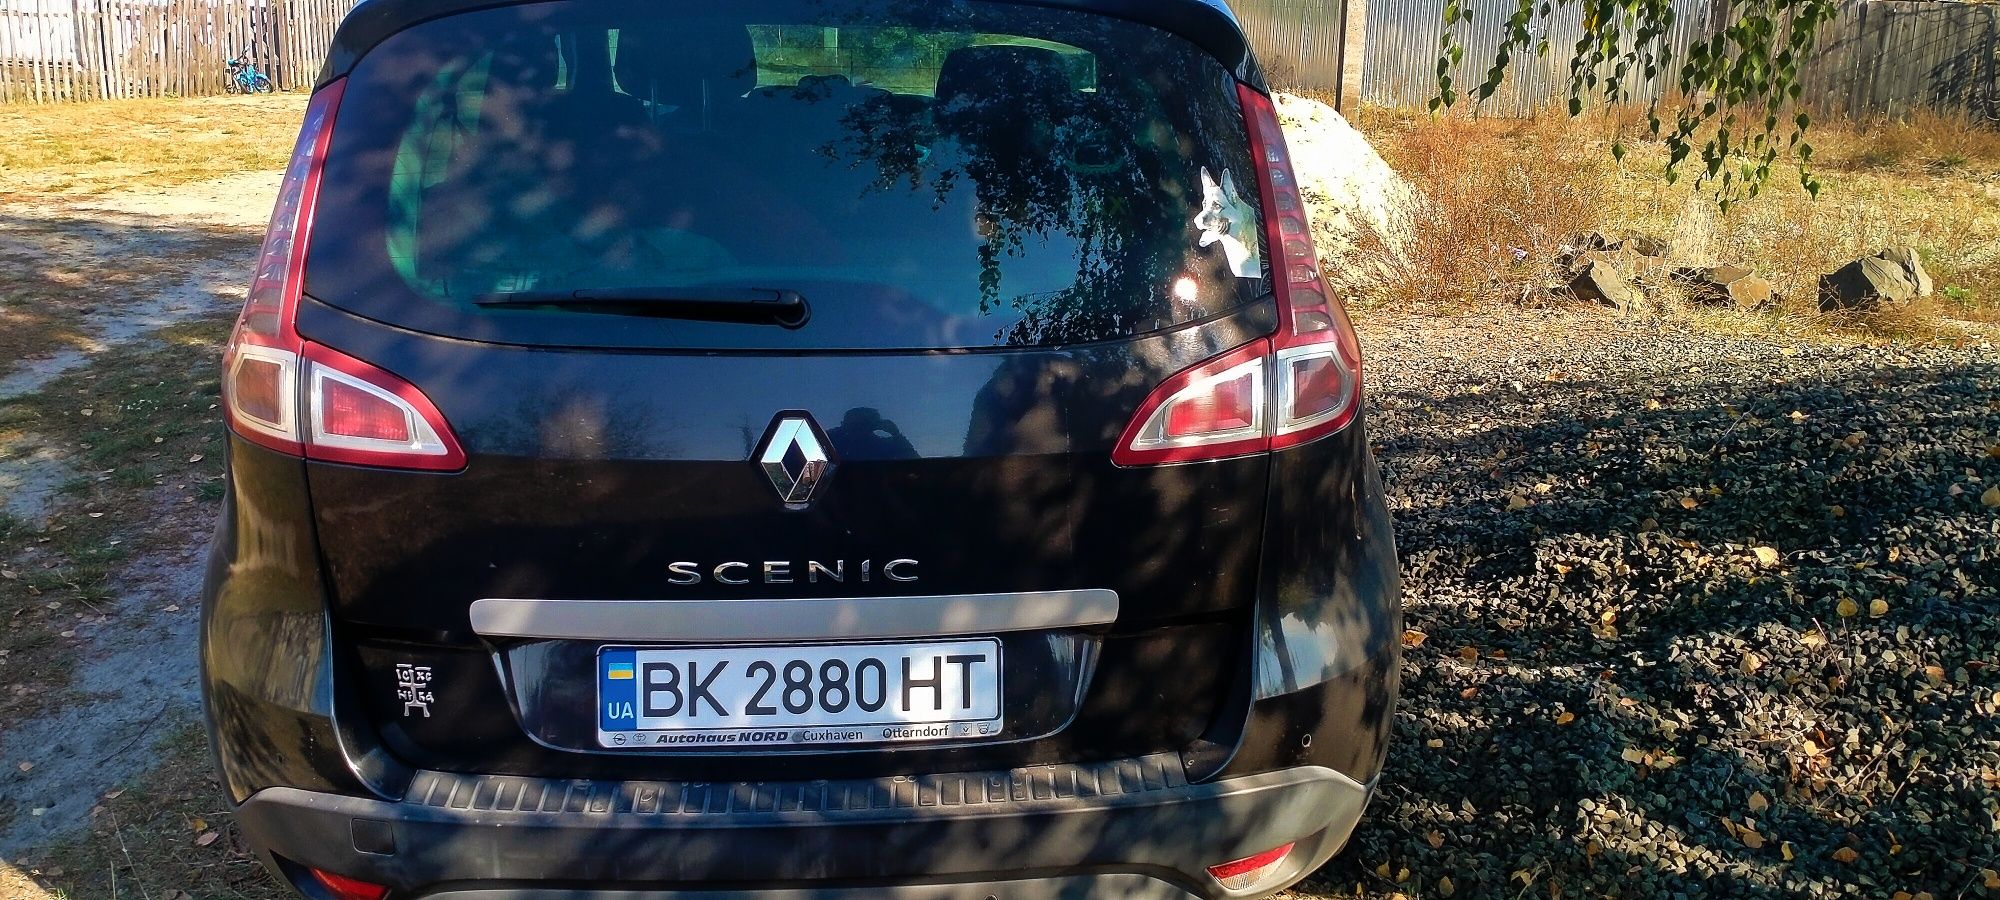 Renault Scenic 3 2009